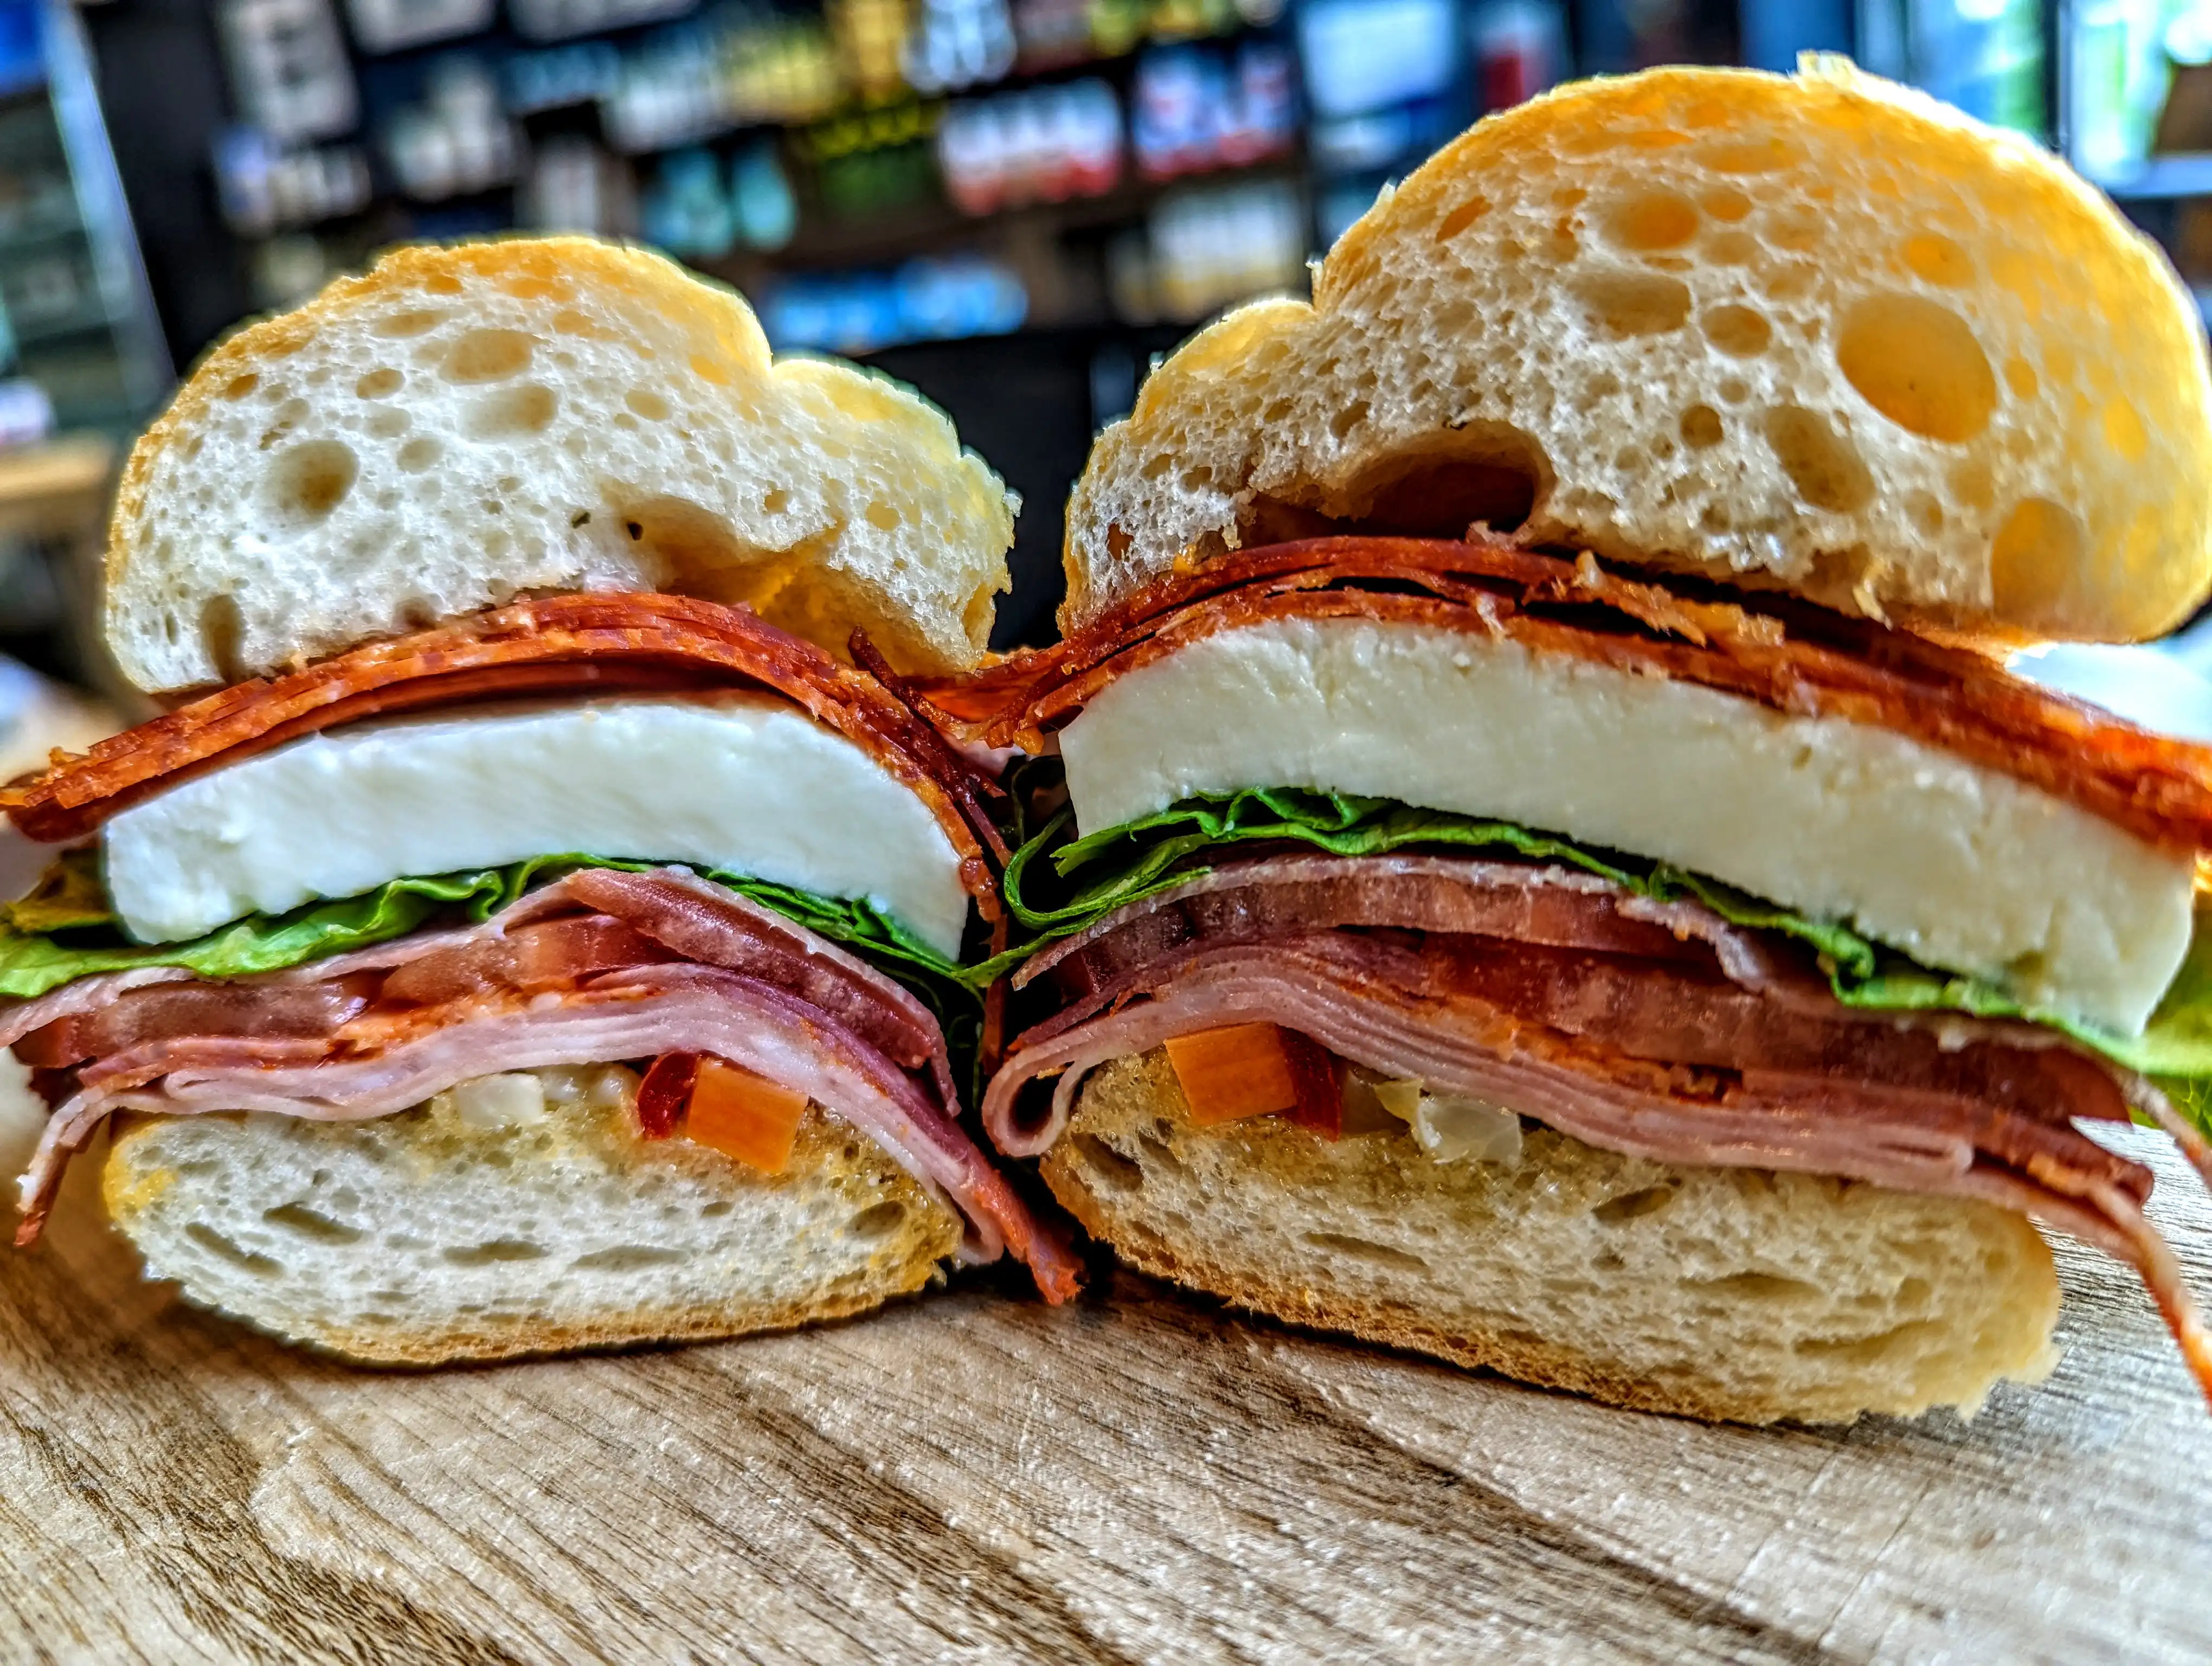 Italian Sub Sandwich